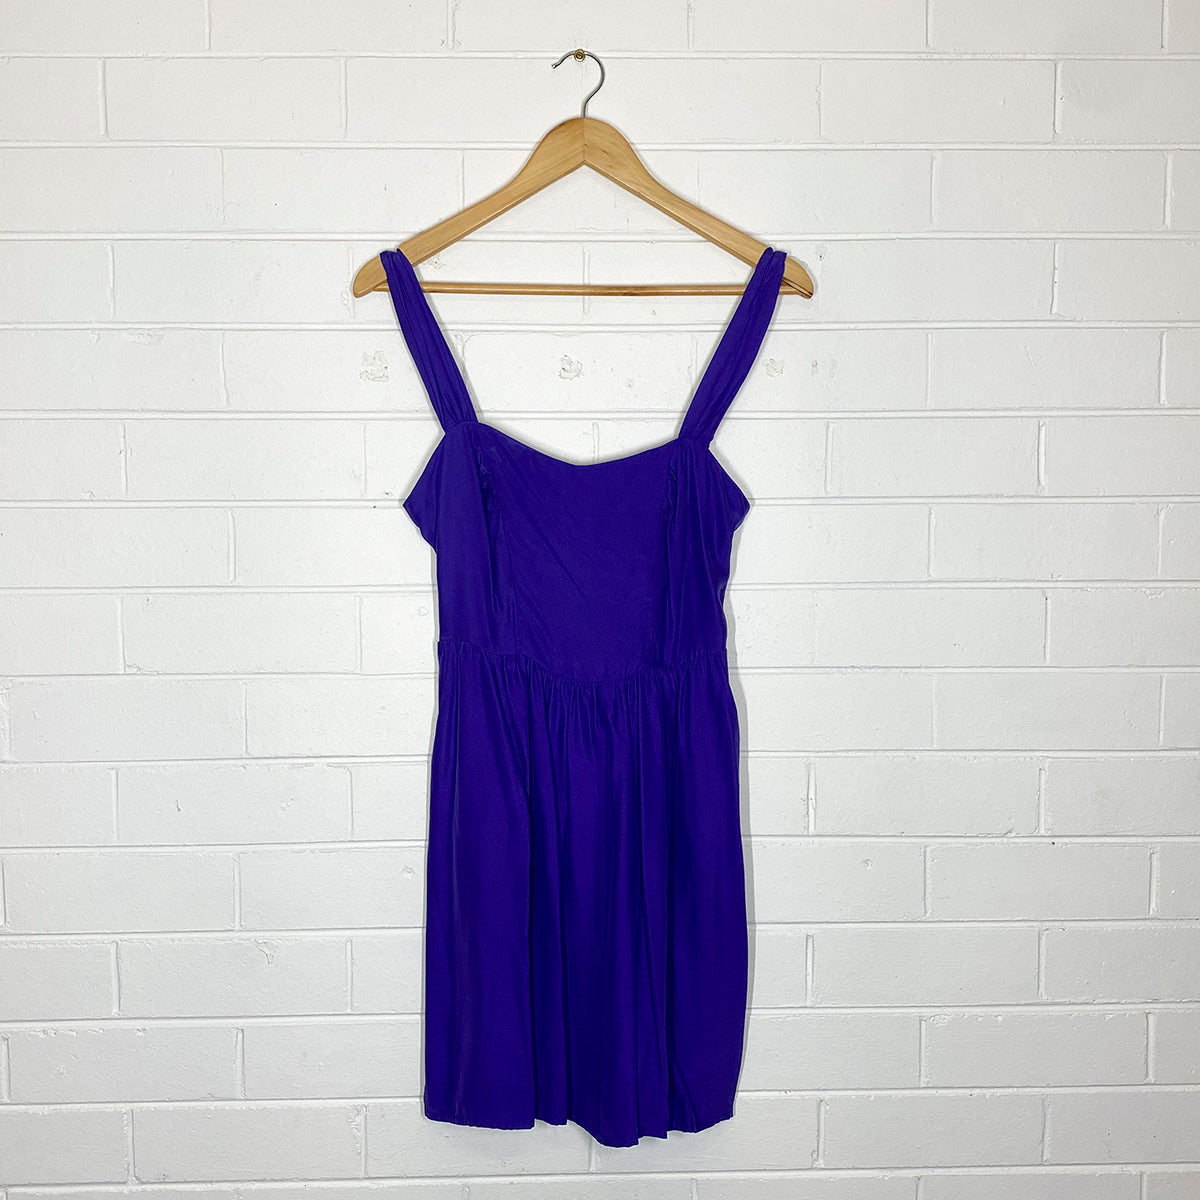 Bettina Liano | dress | size 8 | 100% silk